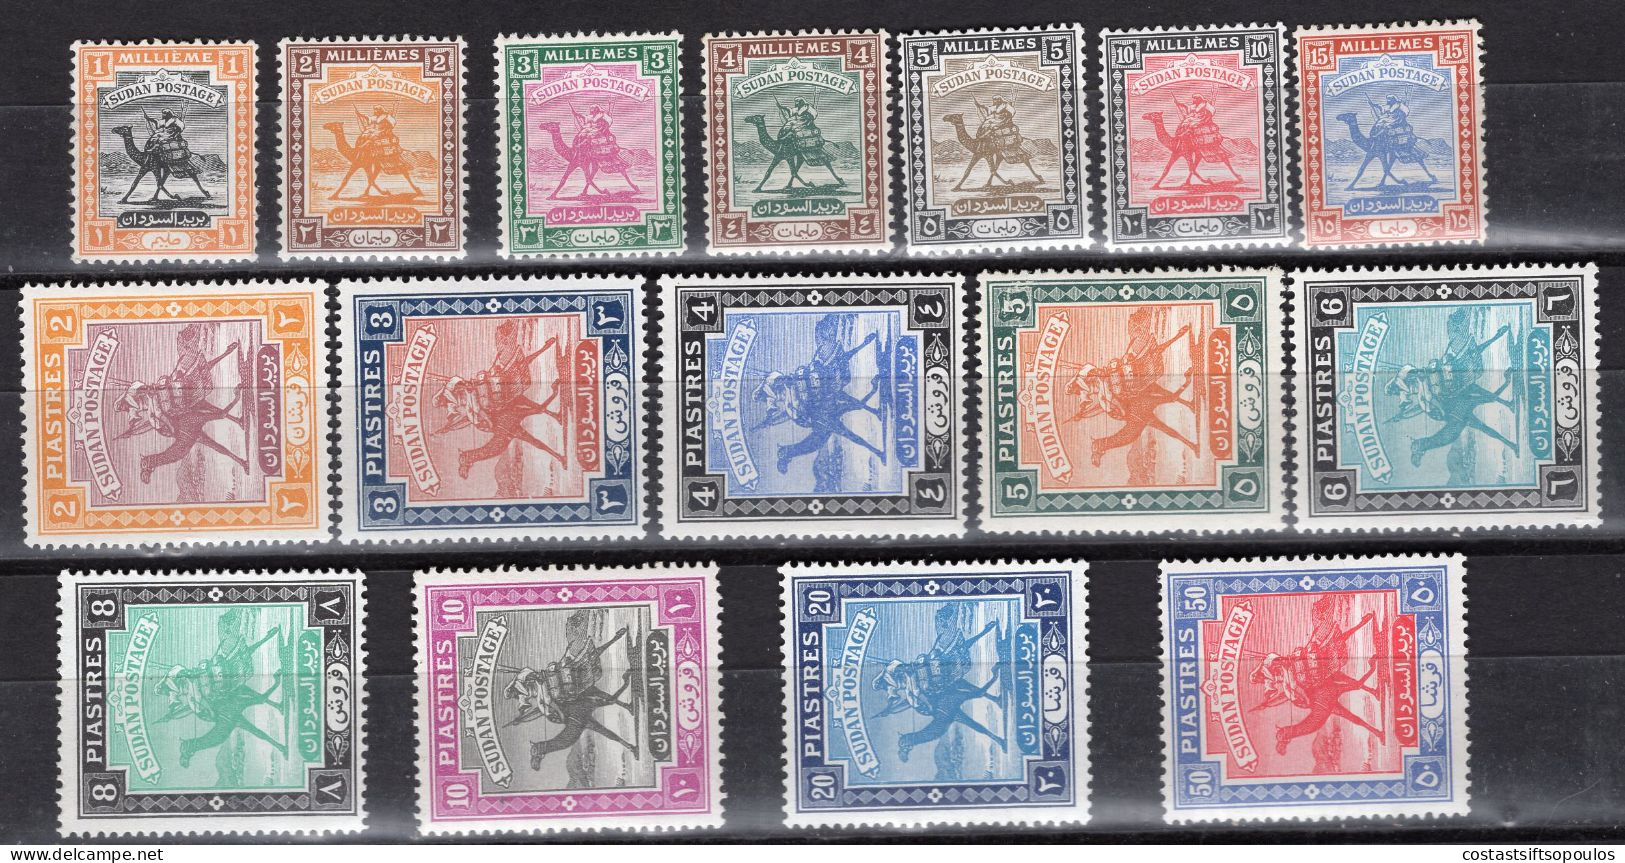 2265. SUDAN. 1948 SG. 96-111 MNH,CAMELPOSTMAN. - Soudan (...-1951)